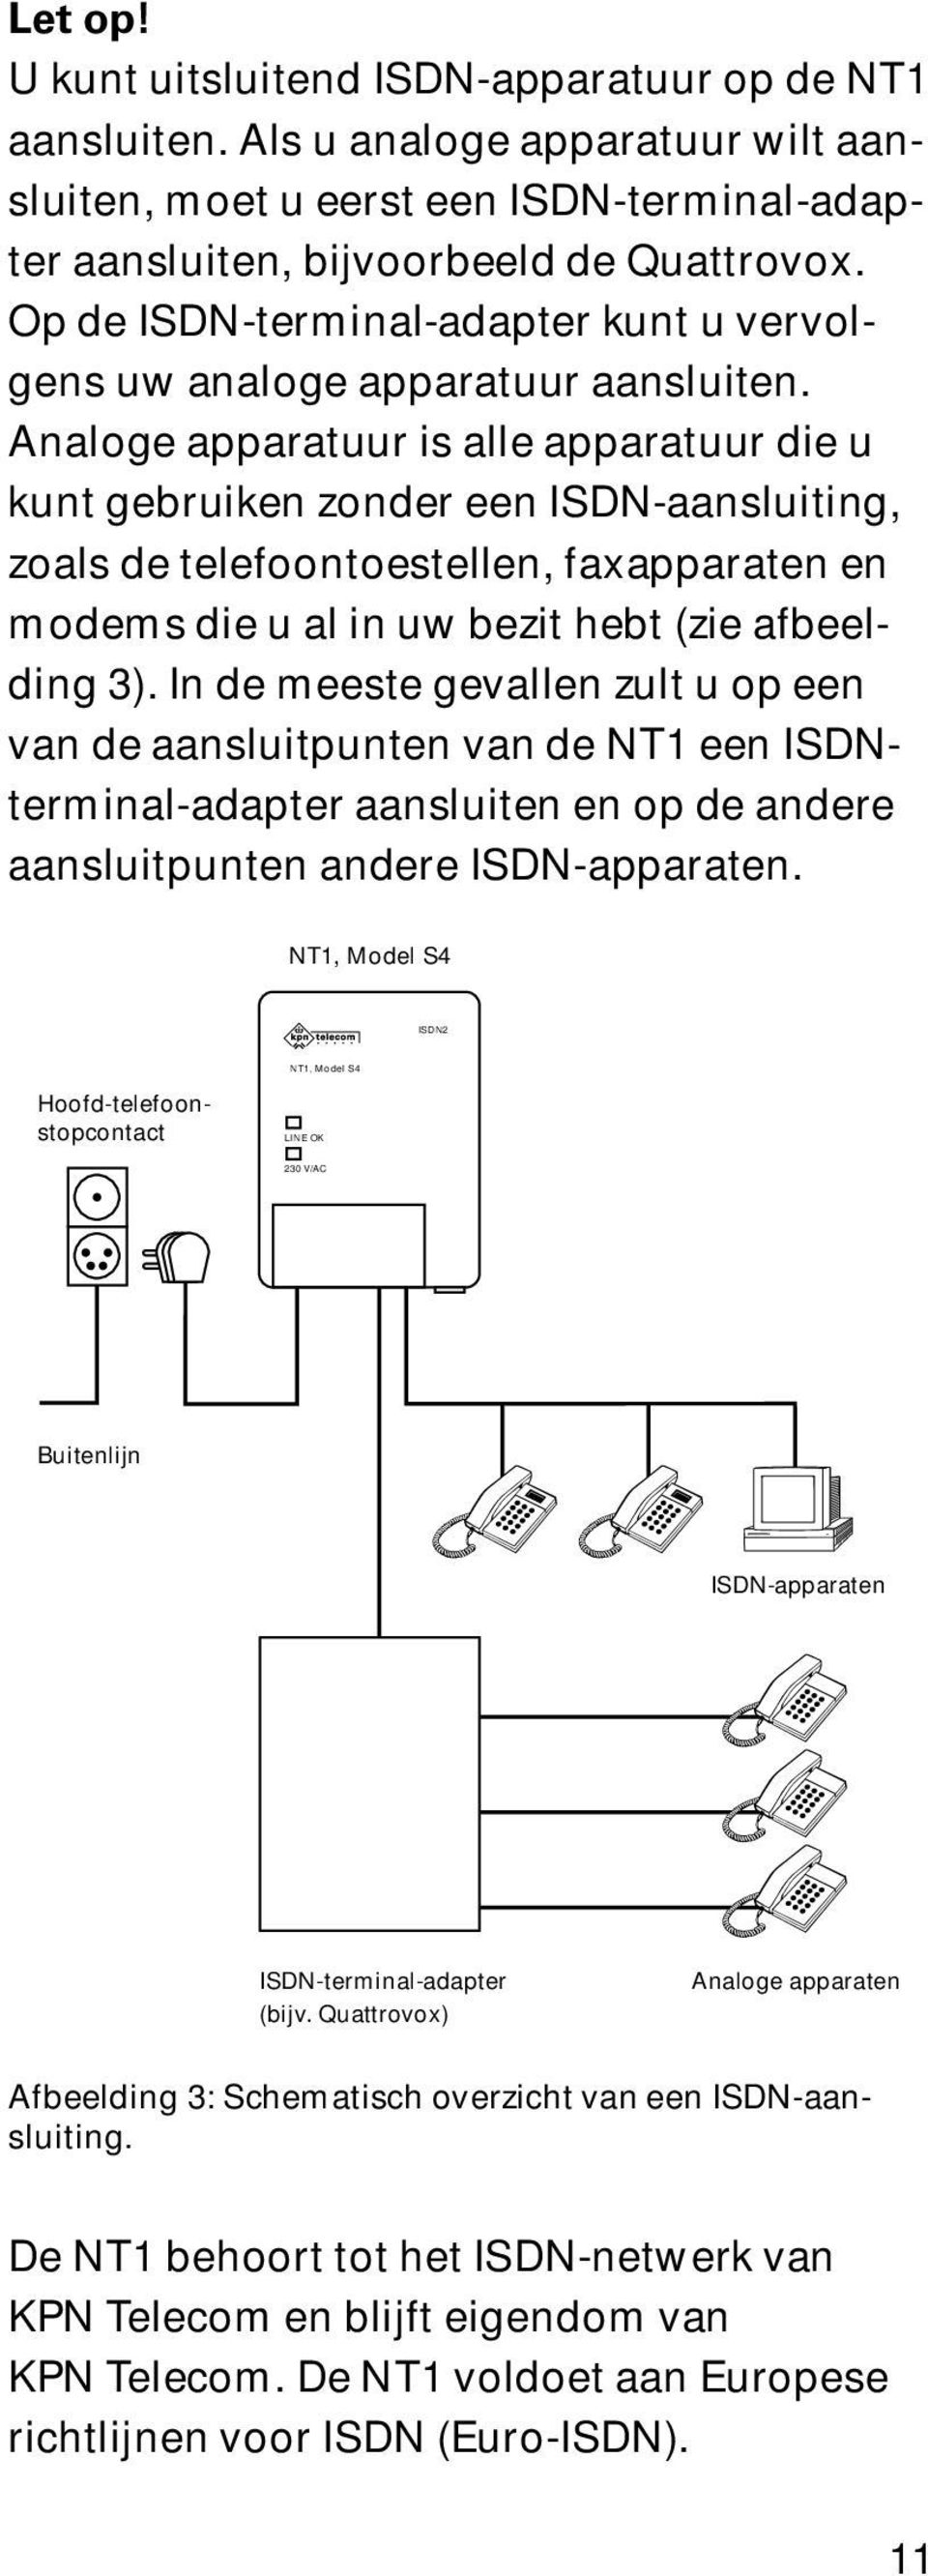 Analoge apparatuur is alle apparatuur die u kunt gebruiken zonder een ISDN-aansluiting, zoals de telefoontoestellen, faxapparaten en modems die u al in uw bezit hebt (zie afbeelding 3).